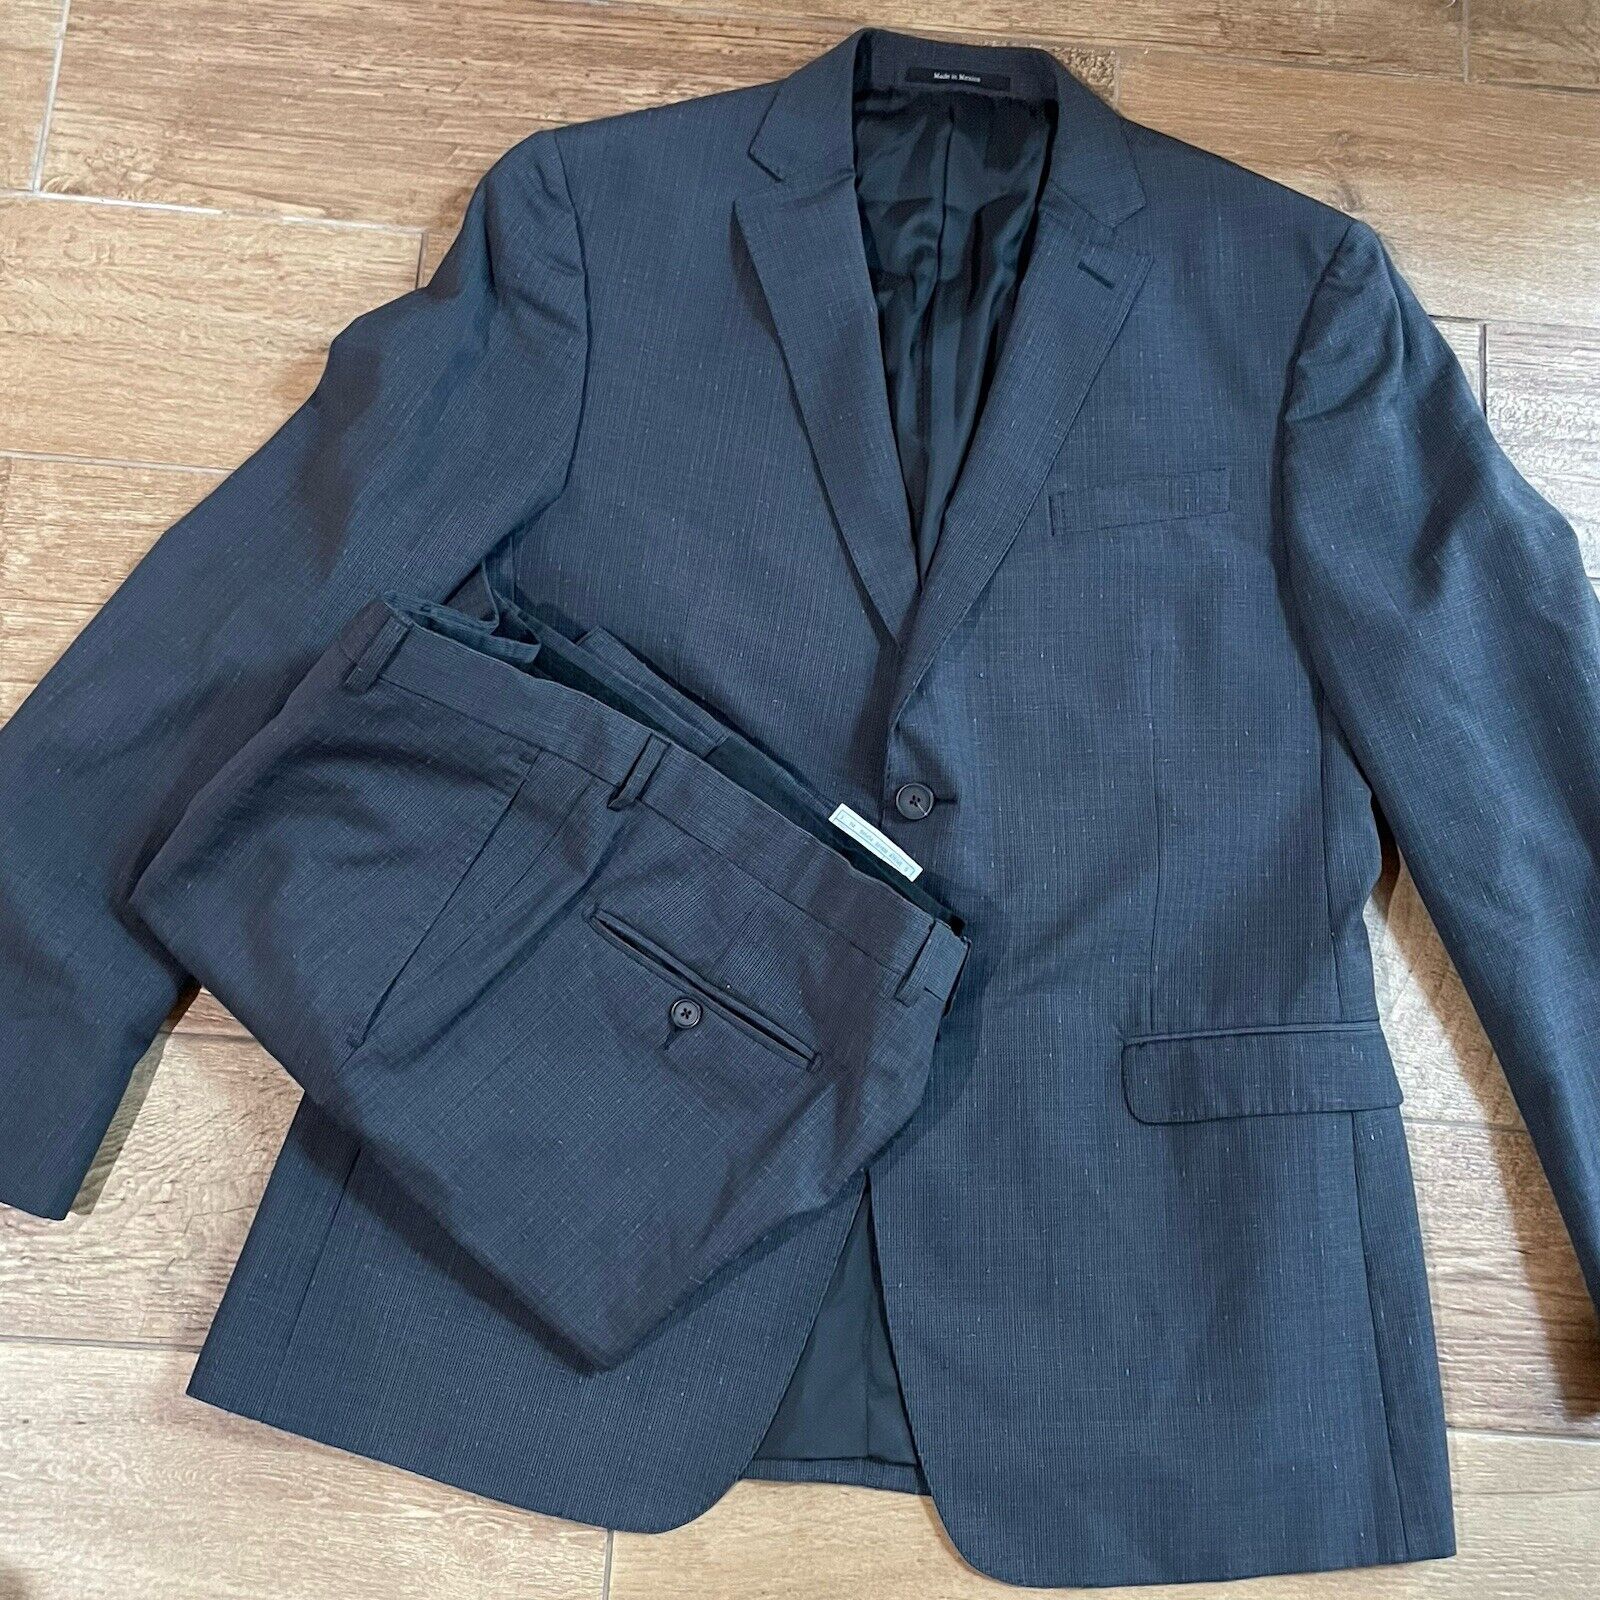 $2990 CURRENT Z Zegna Summer Blue Suit 2 Piece US 42R W36 Jacket Pants IT 52